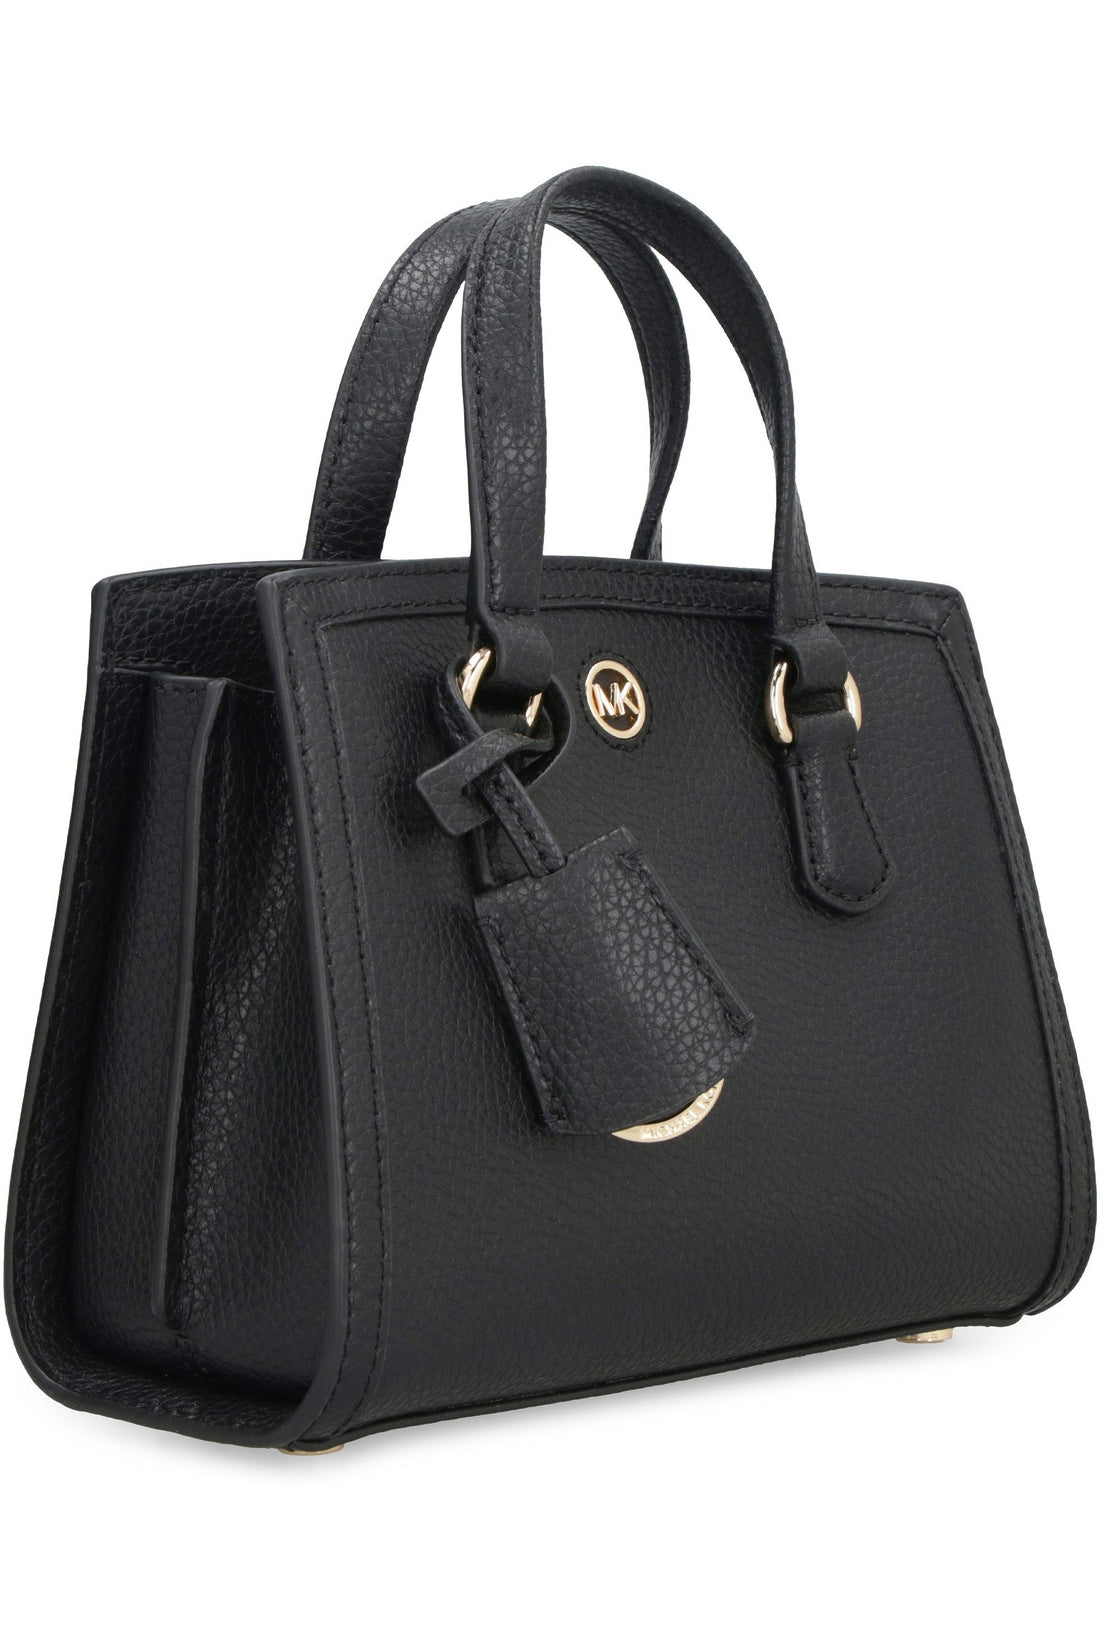 MICHAEL MICHAEL KORS-OUTLET-SALE-Chantal leather mini handbag-ARCHIVIST